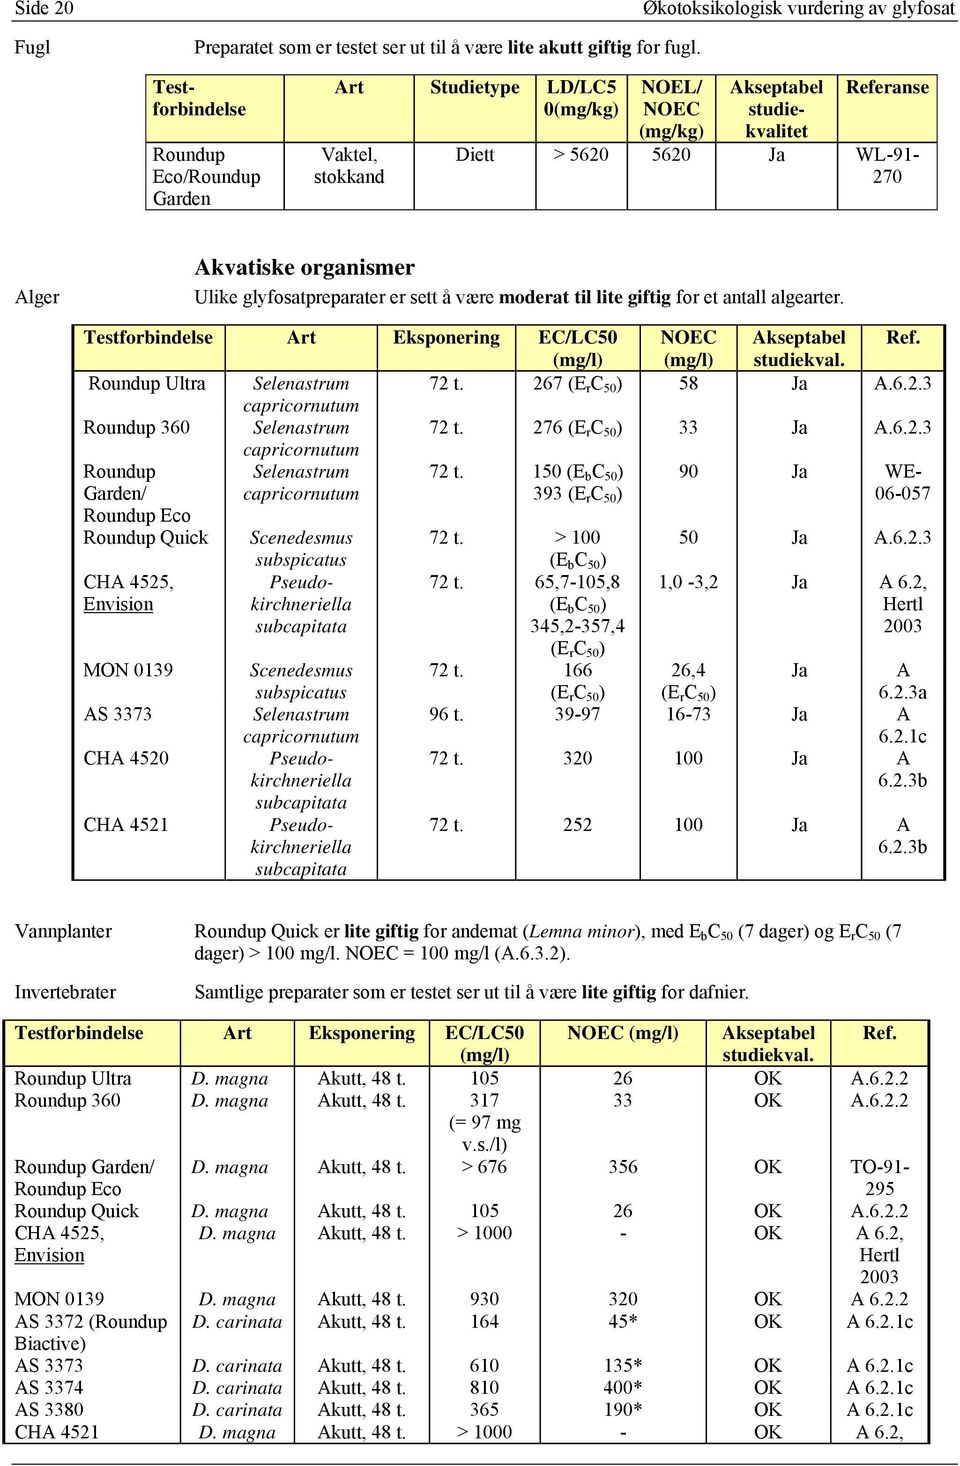 WL-91-270 Alger Akvatiske organismer Ulike glyfosatpreparater er sett å være moderat til lite giftig for et antall algearter. Testforbindelse Art Eksponering EC/LC50 NOEC Akseptabel Ref.